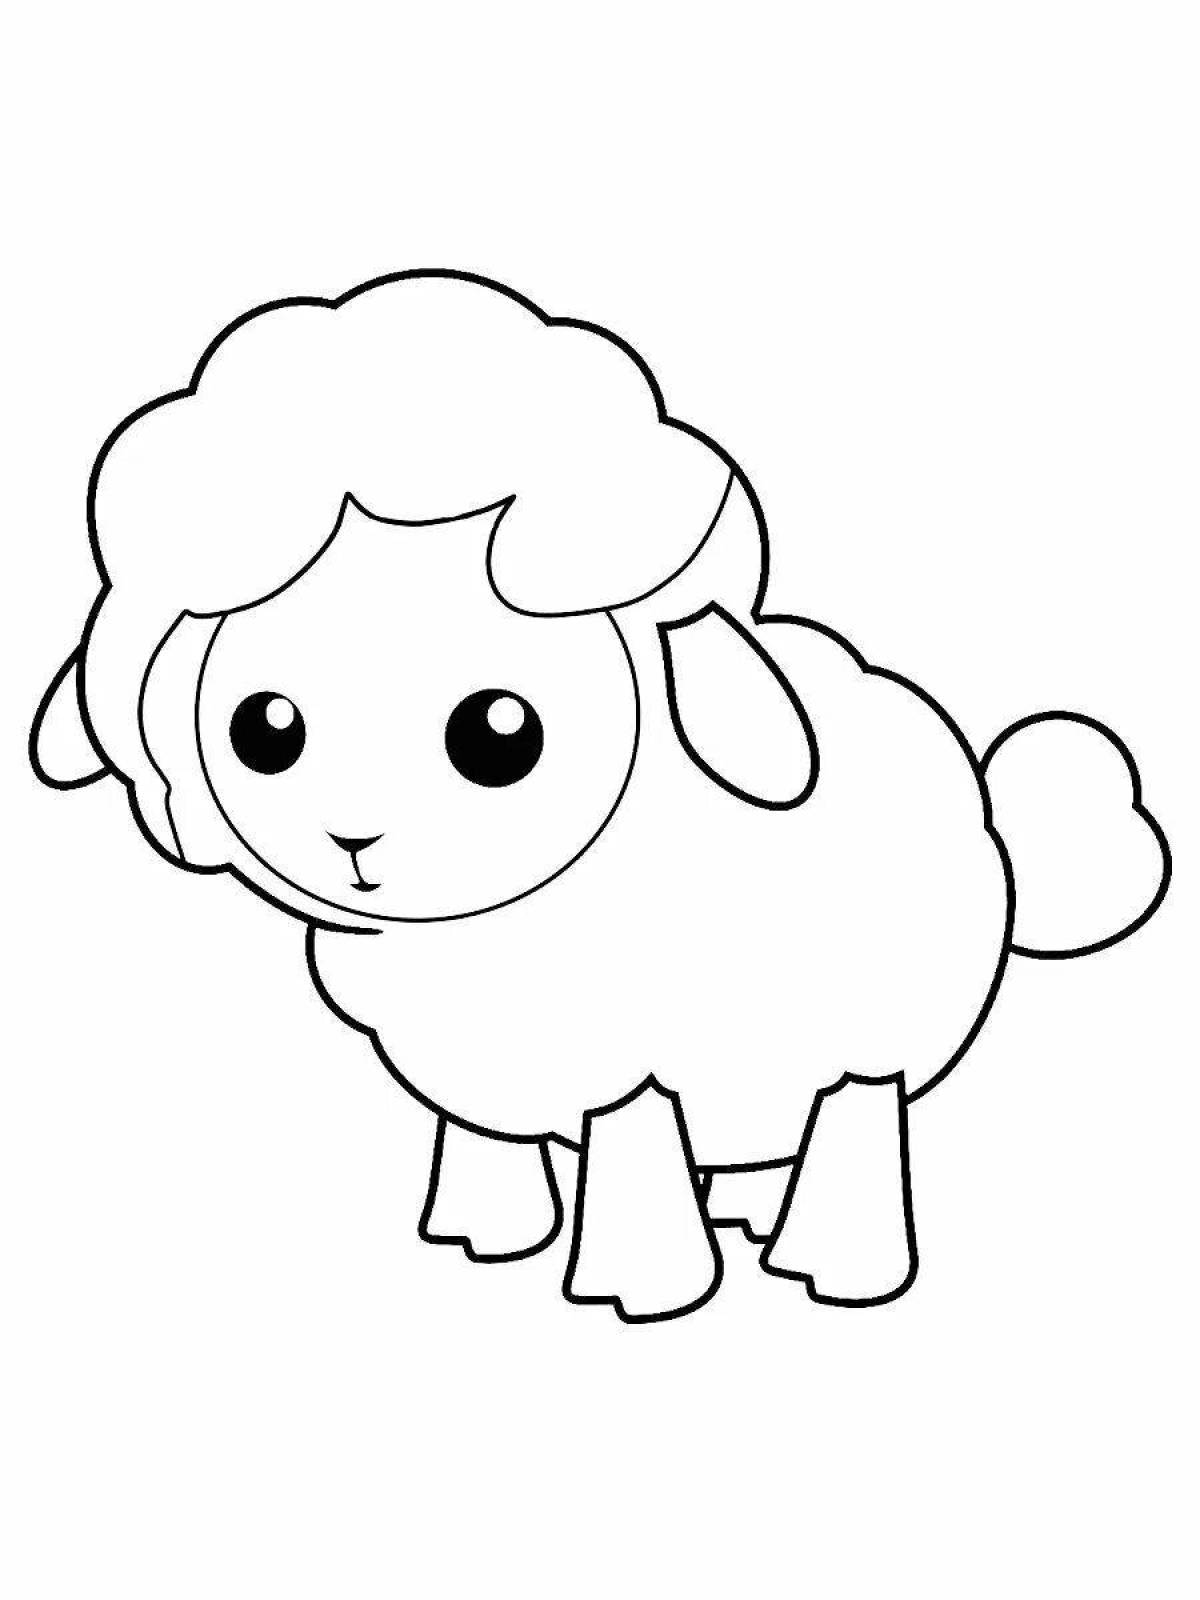 Сияющая раскраска овечка для детей 3-4 лет